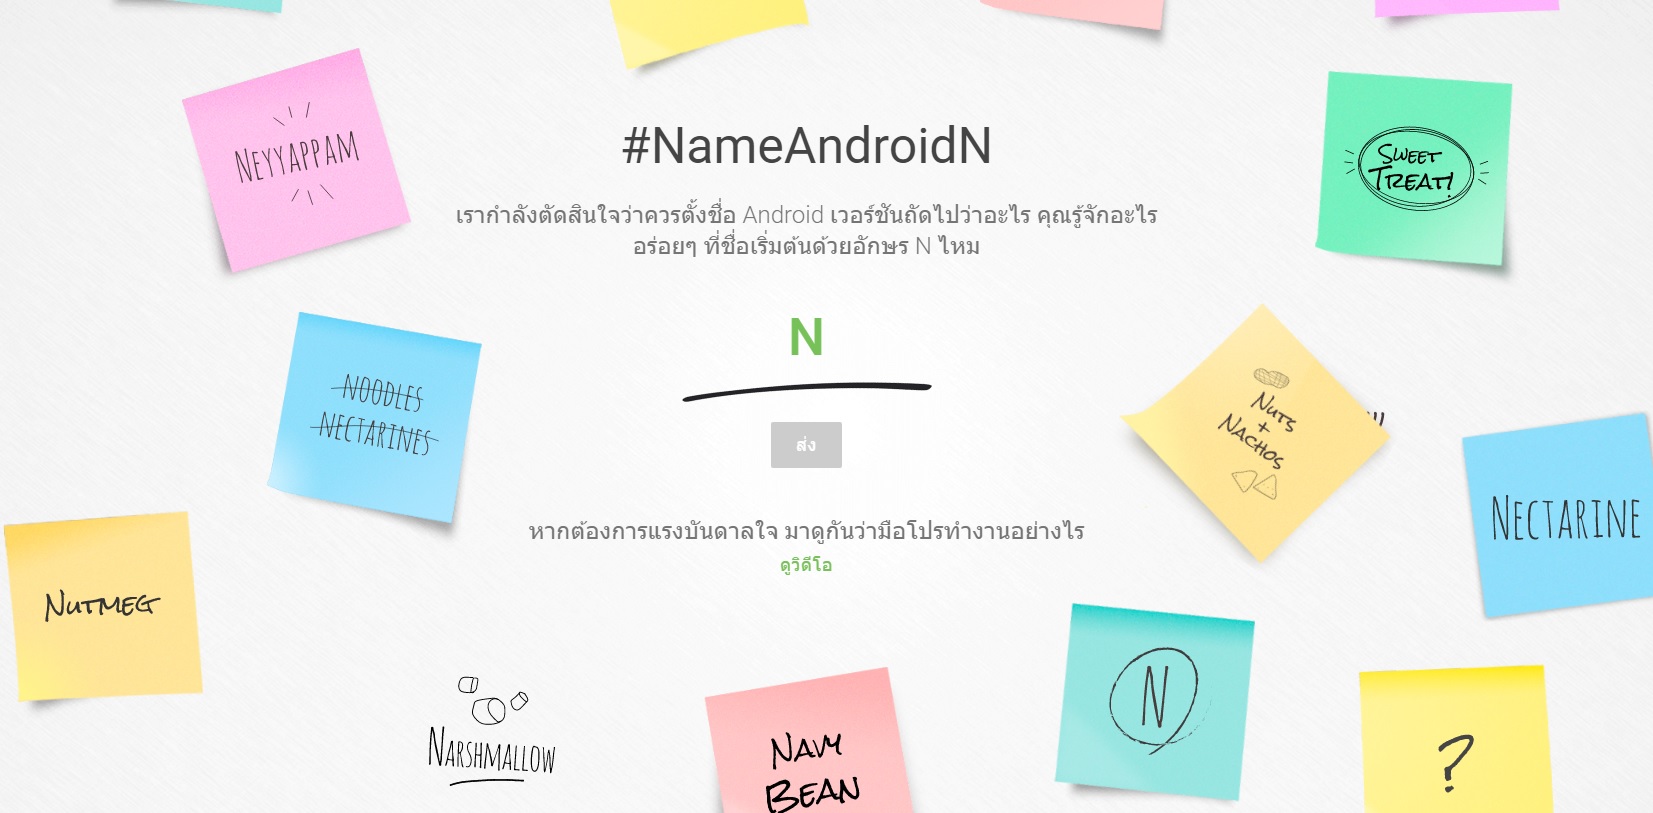 Android N อาจจะมีชื่ออย่างเป็นทางการ ที่ไม่ใช่ขนมหวานเป็นครั้งแรก ??